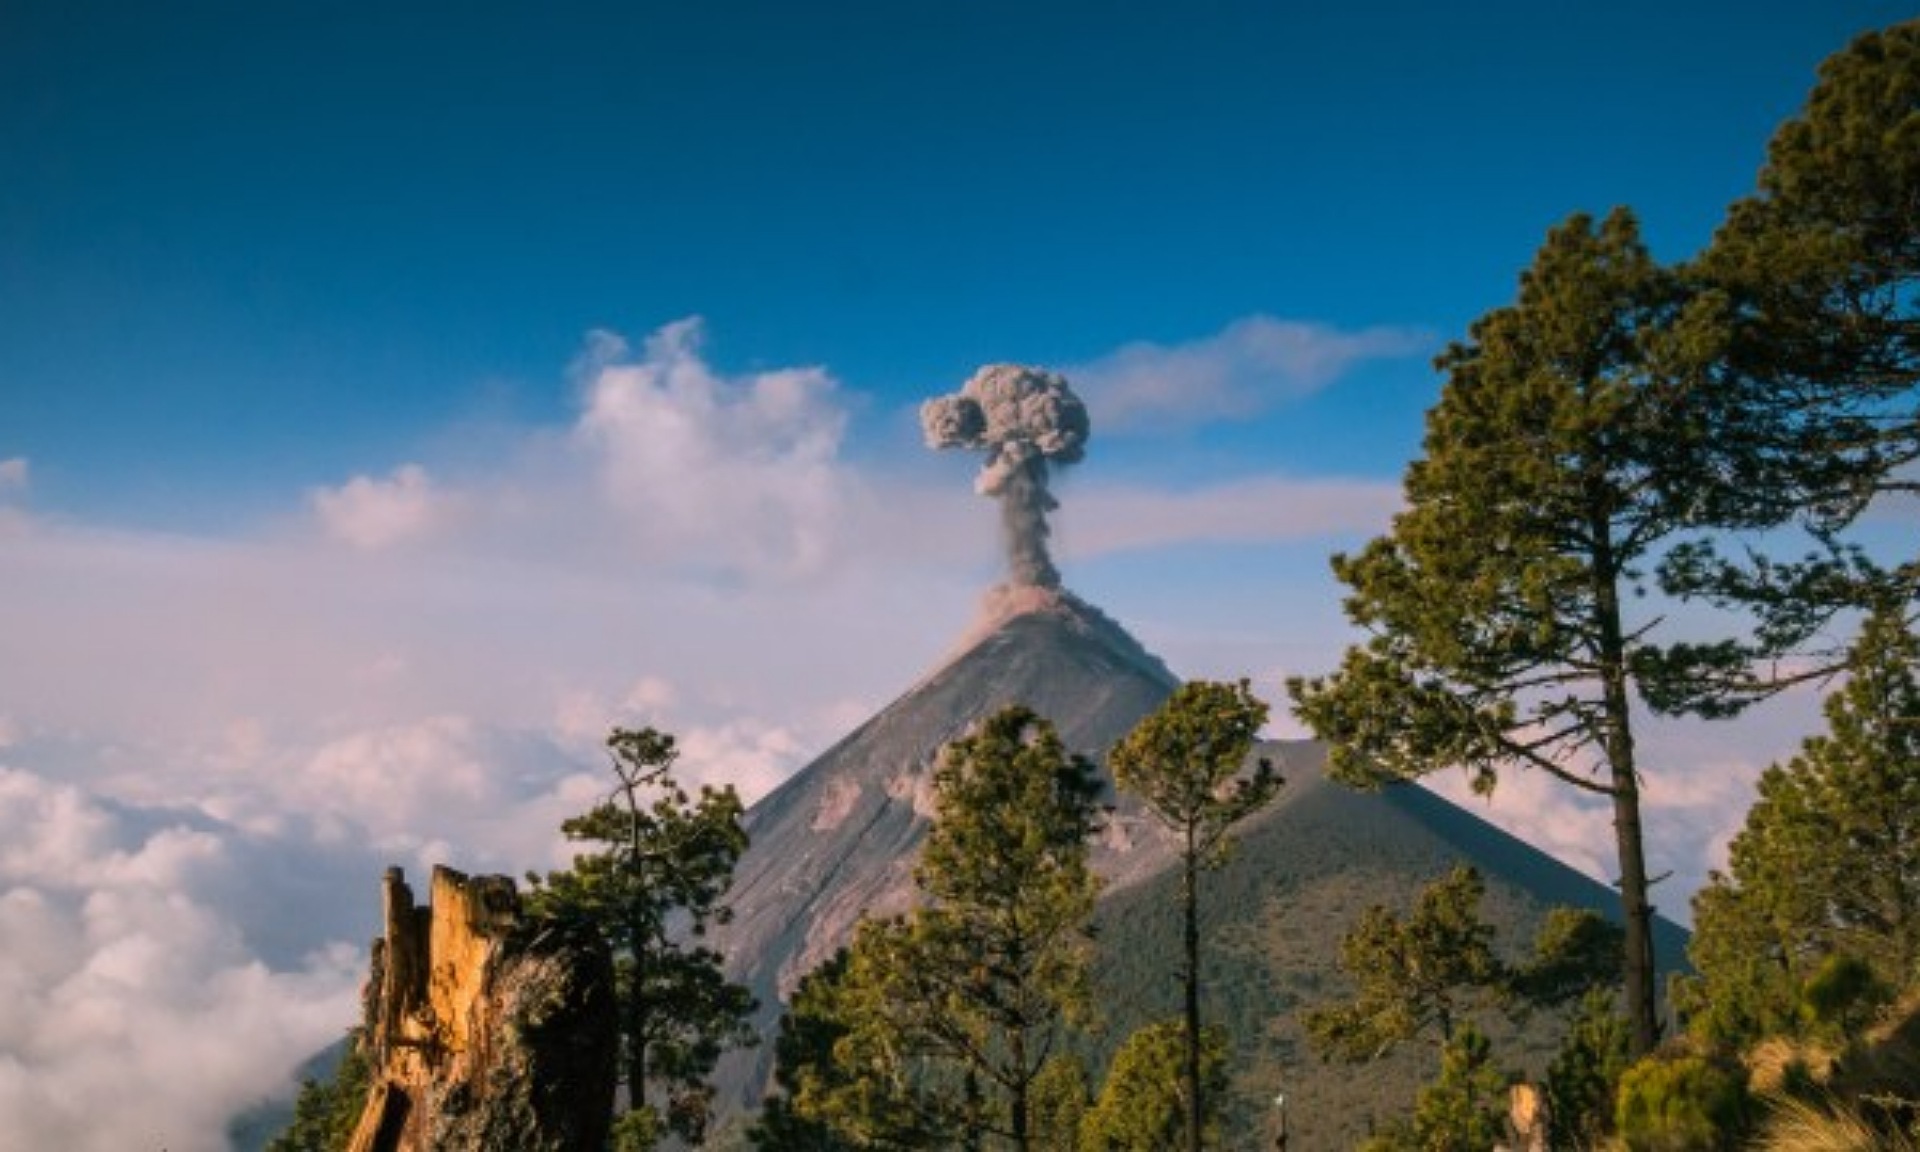 PVMBG: 22 Gunung Api di Indonesia Berstatus di Atas Level Normal